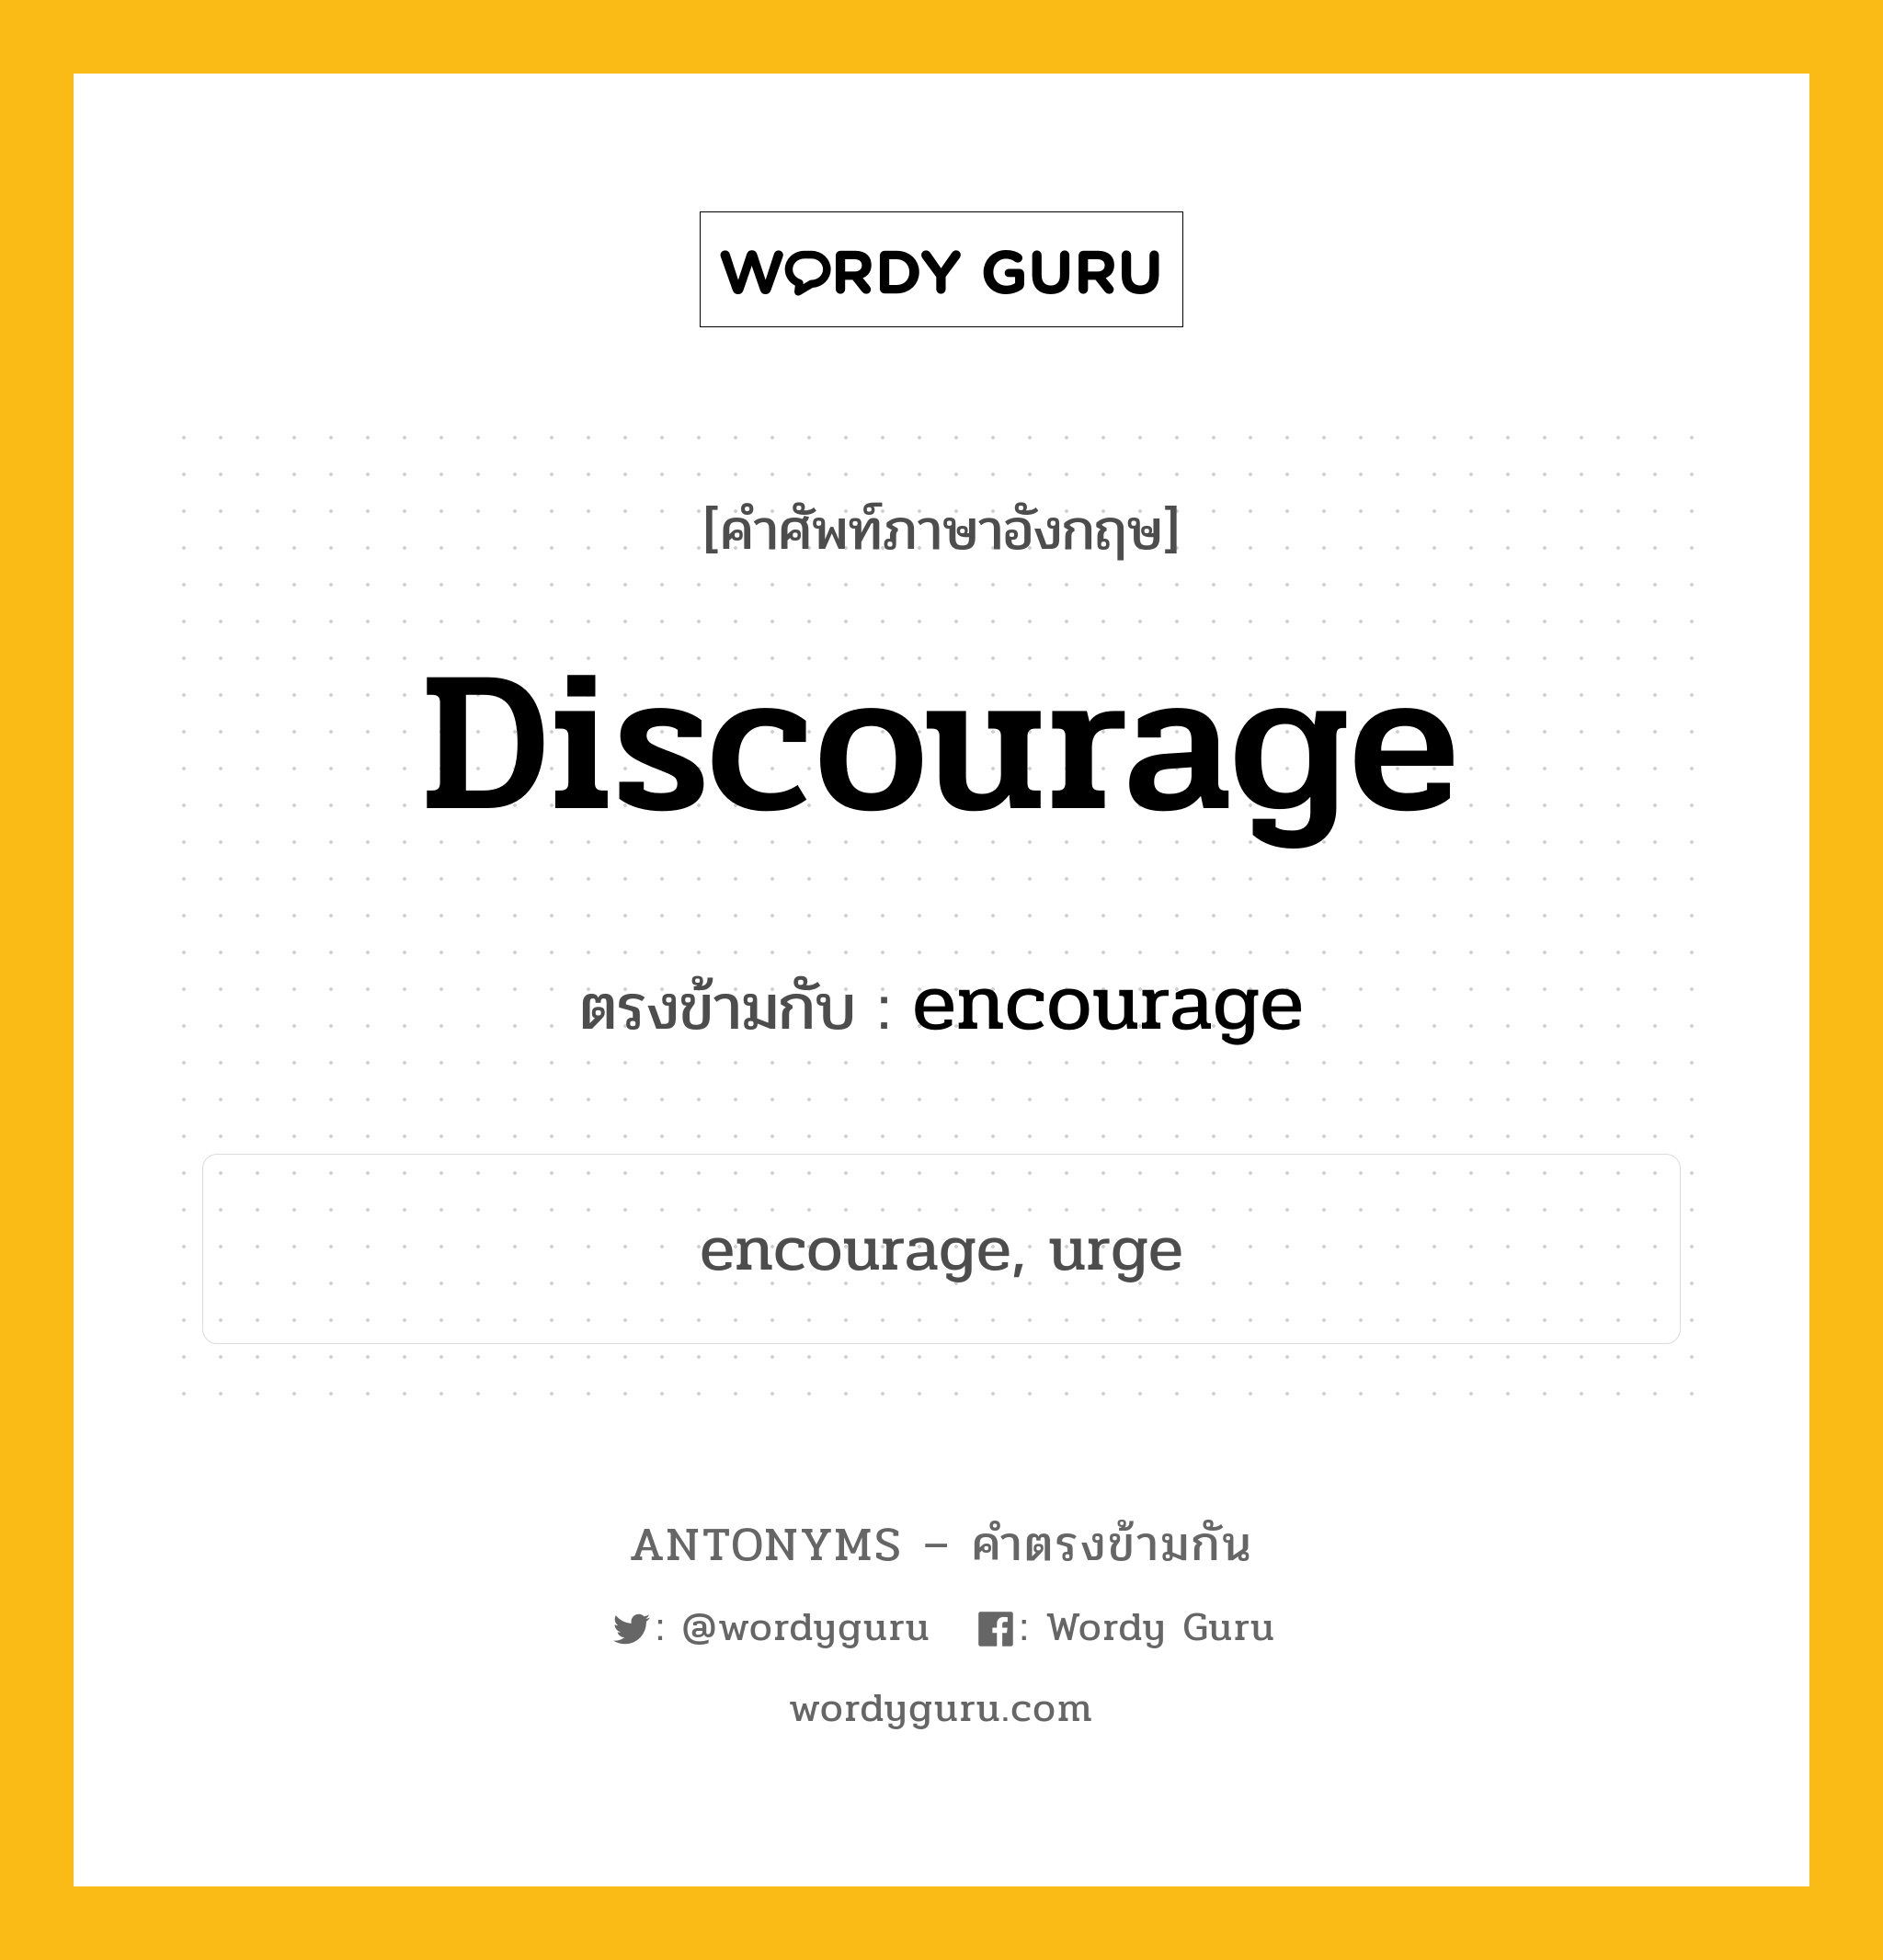 discourage เป็นคำตรงข้ามกับคำไหนบ้าง?, คำศัพท์ภาษาอังกฤษ discourage ตรงข้ามกับ encourage หมวด encourage